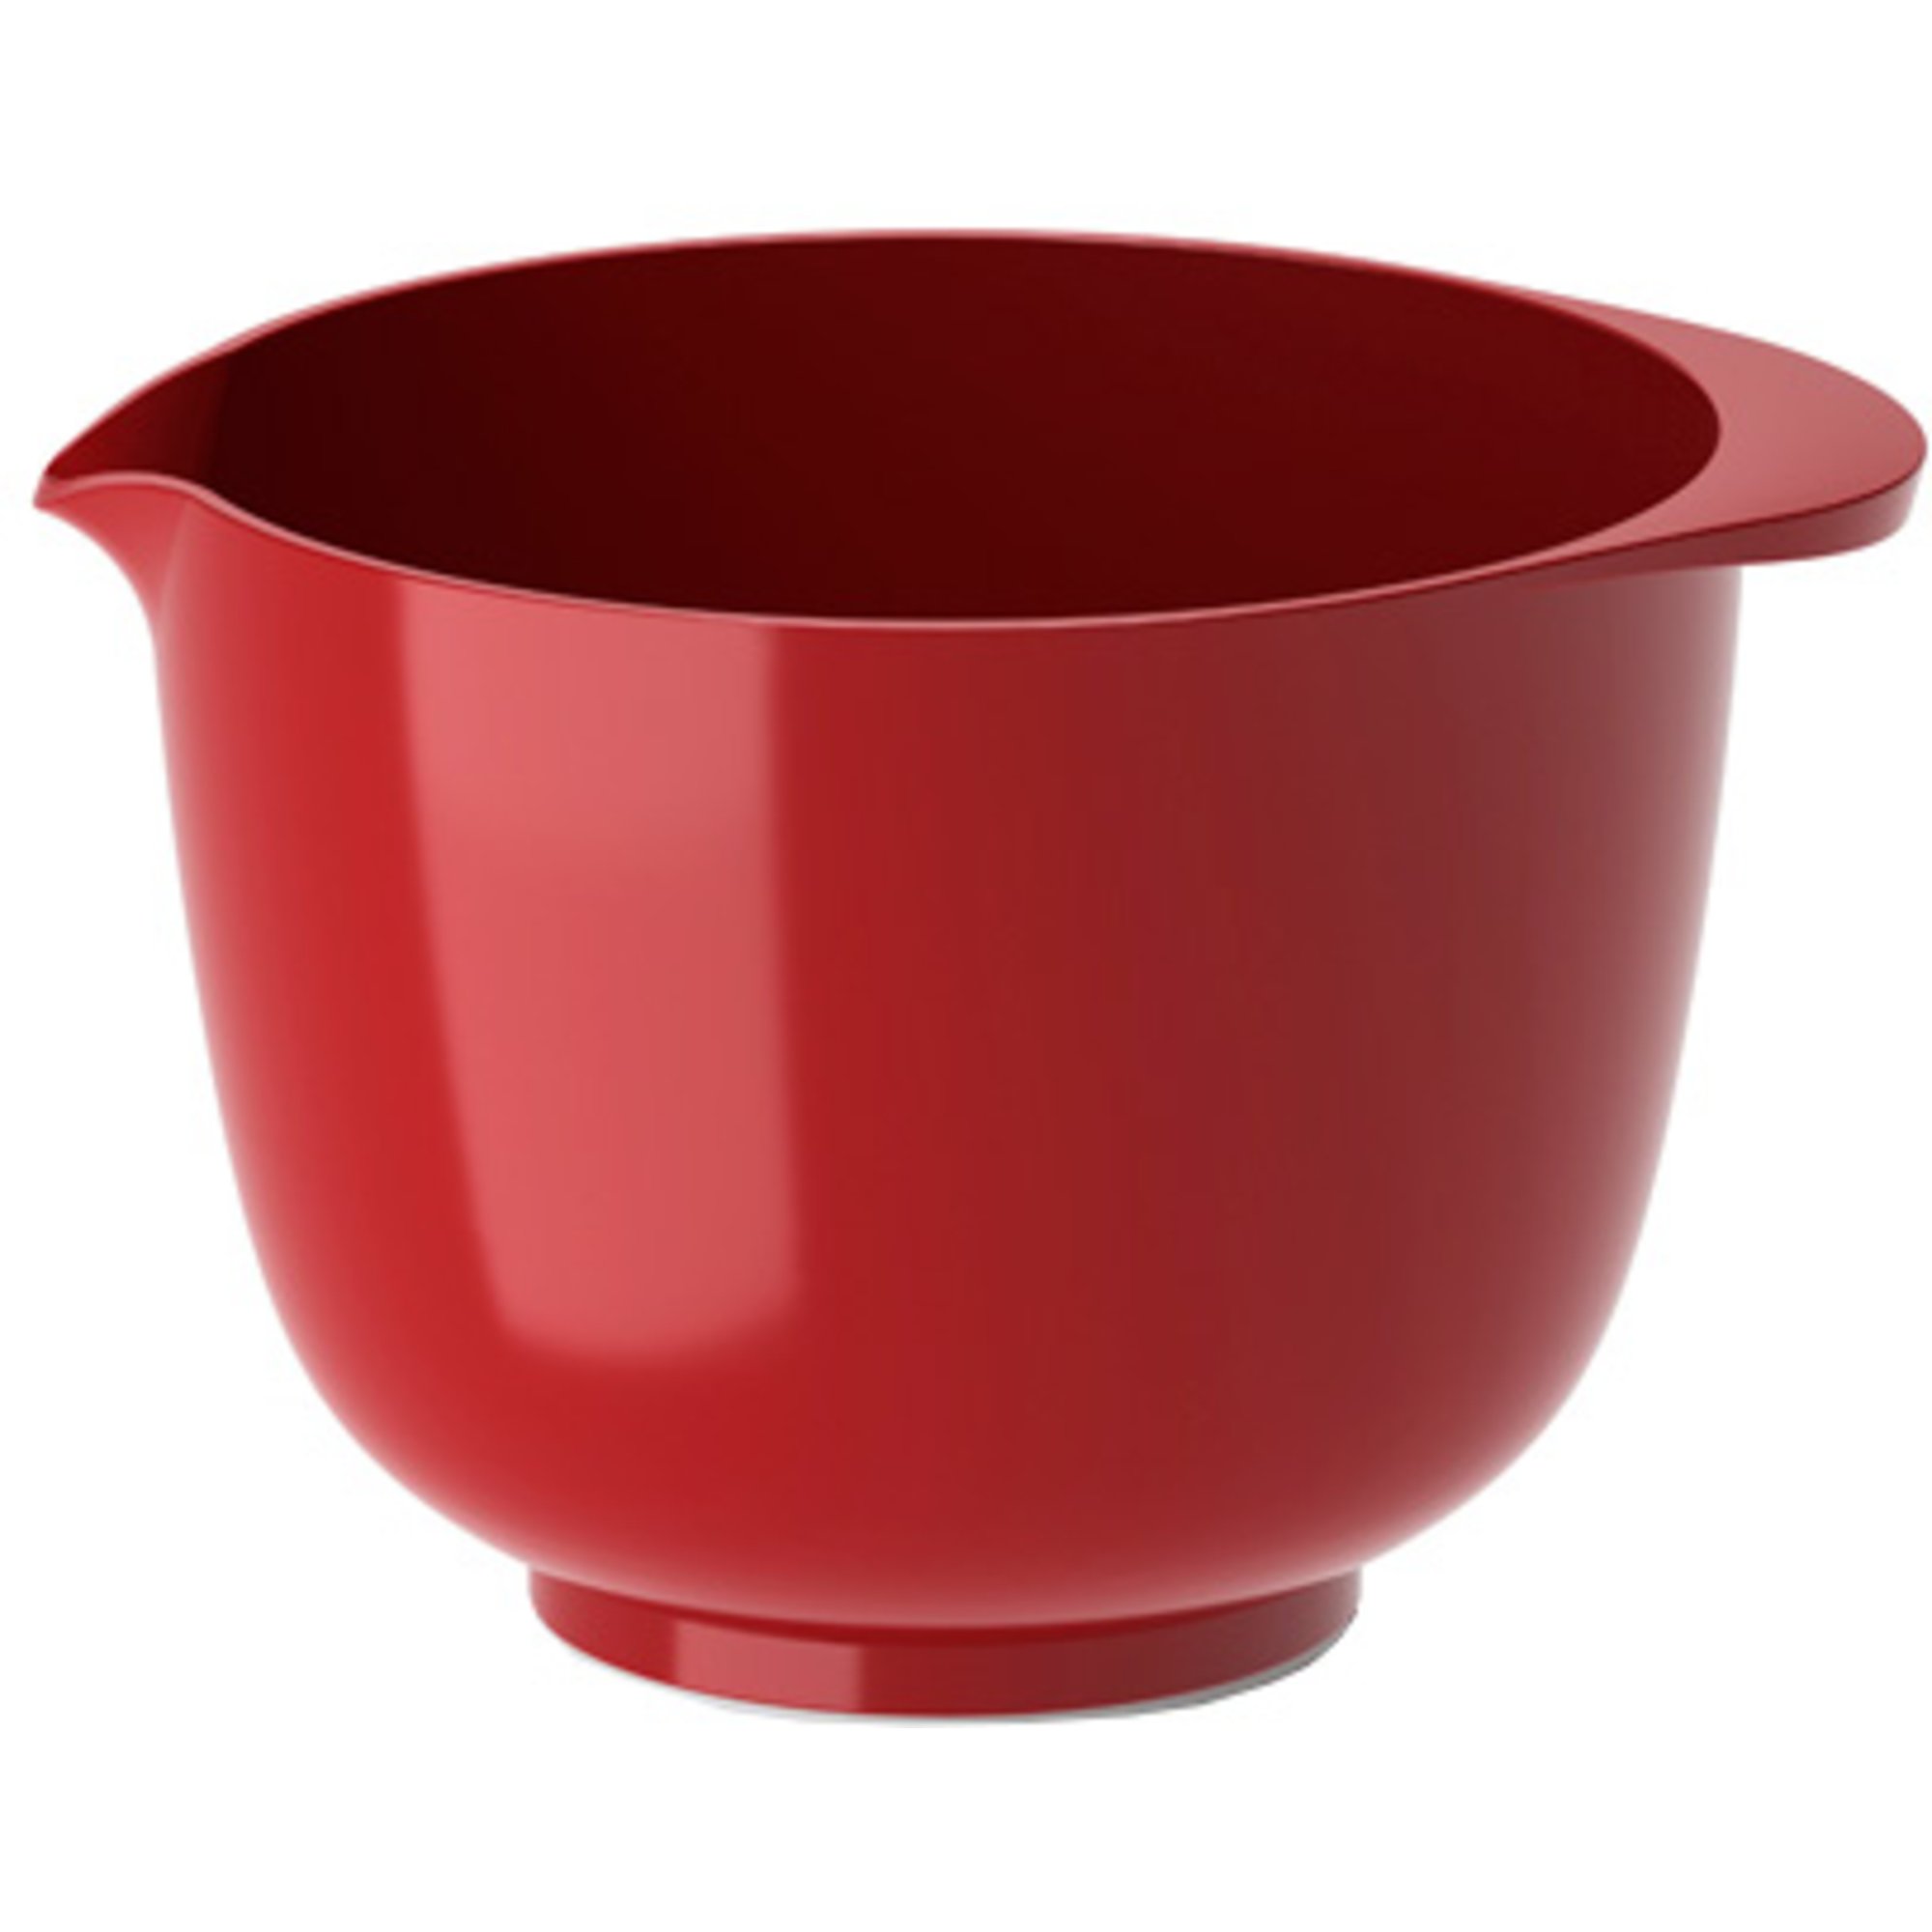 Rosti Margrethe skål 1,5 liter, rød Bakebolle